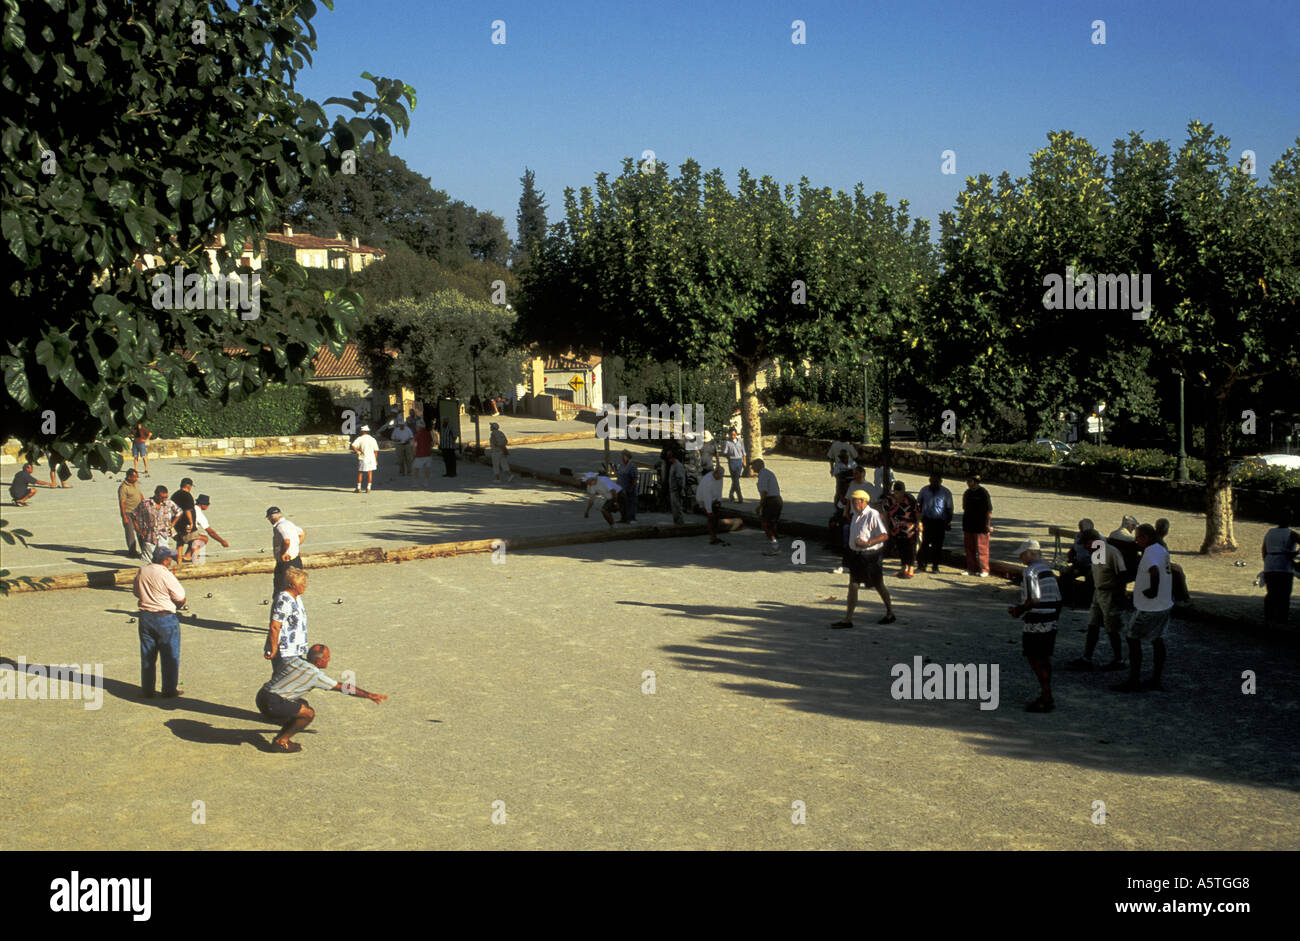 Park à Fayence. Les villageois français jouant ' Boules (boules) 'en parc public, le Var, Provence. Sud de la France. Côte d'azur. Banque D'Images